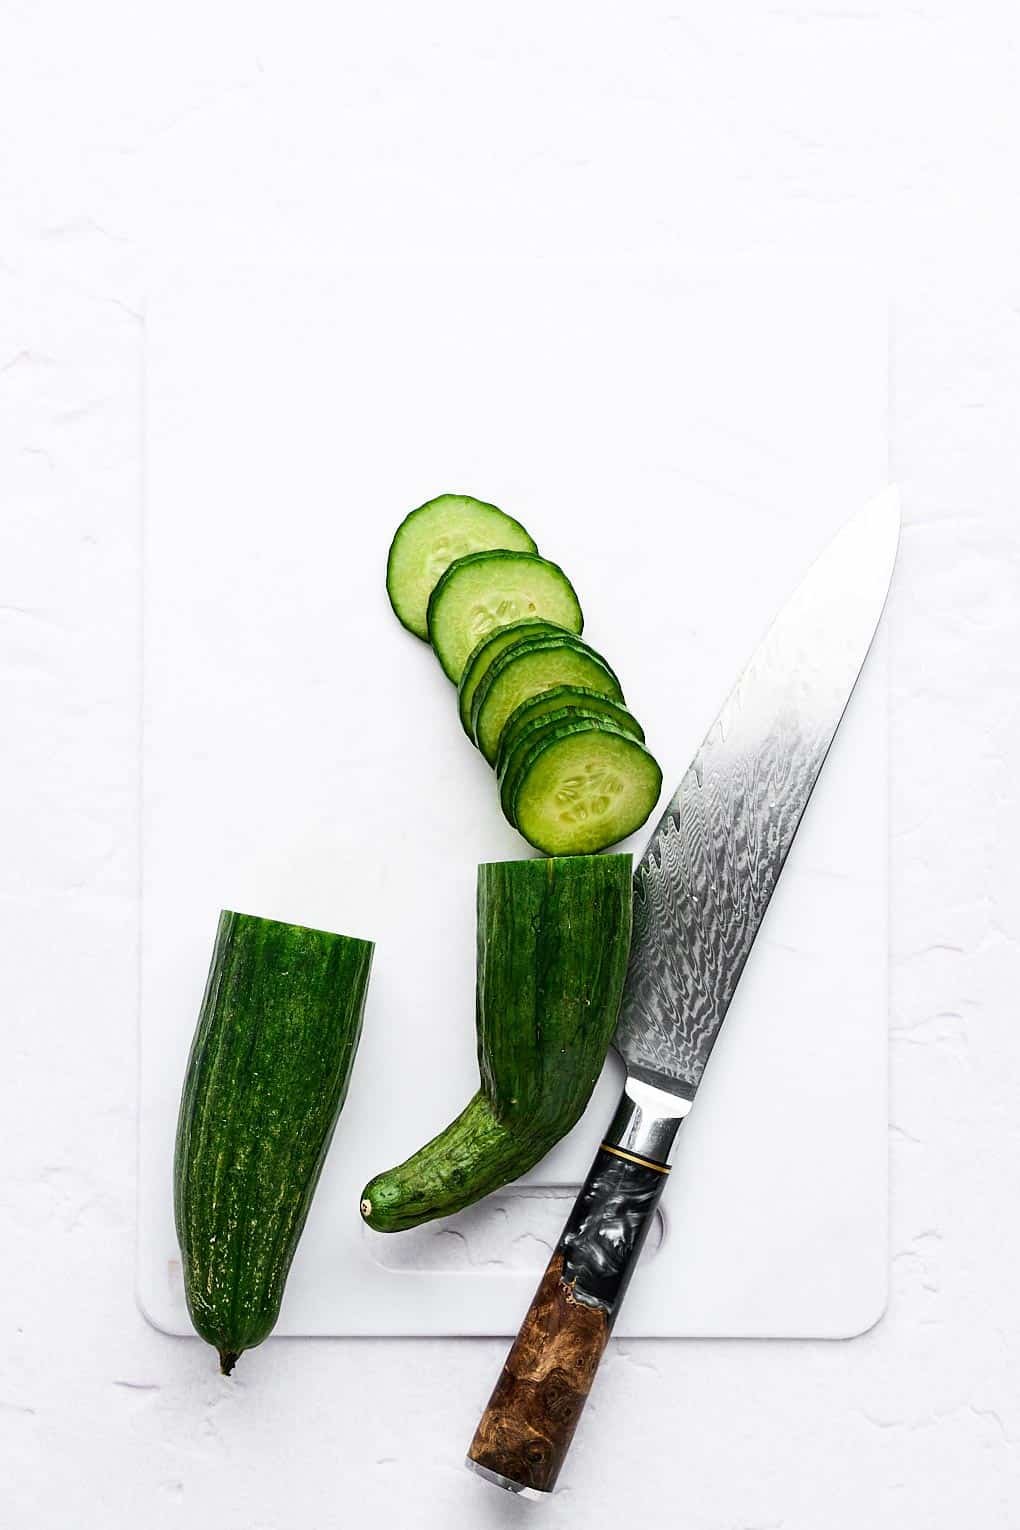 Cutting a cucumber.